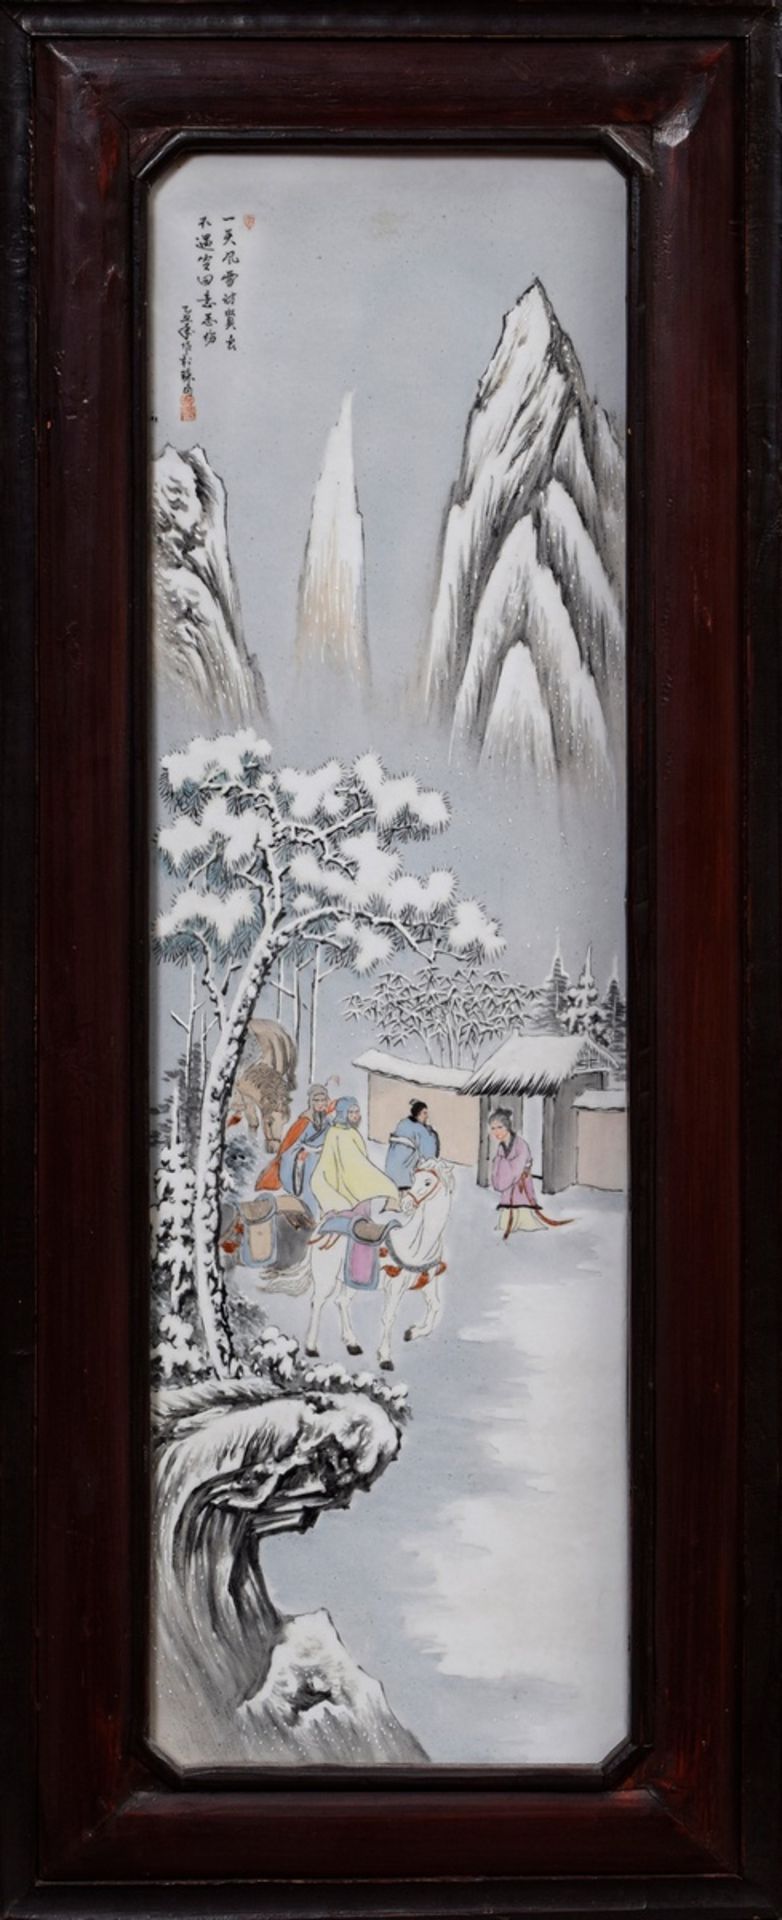 Große chinesische Porzellan Plakette "Reisegesellschaft im Schnee" in Blackwood Rahmen, o.l. bez./s